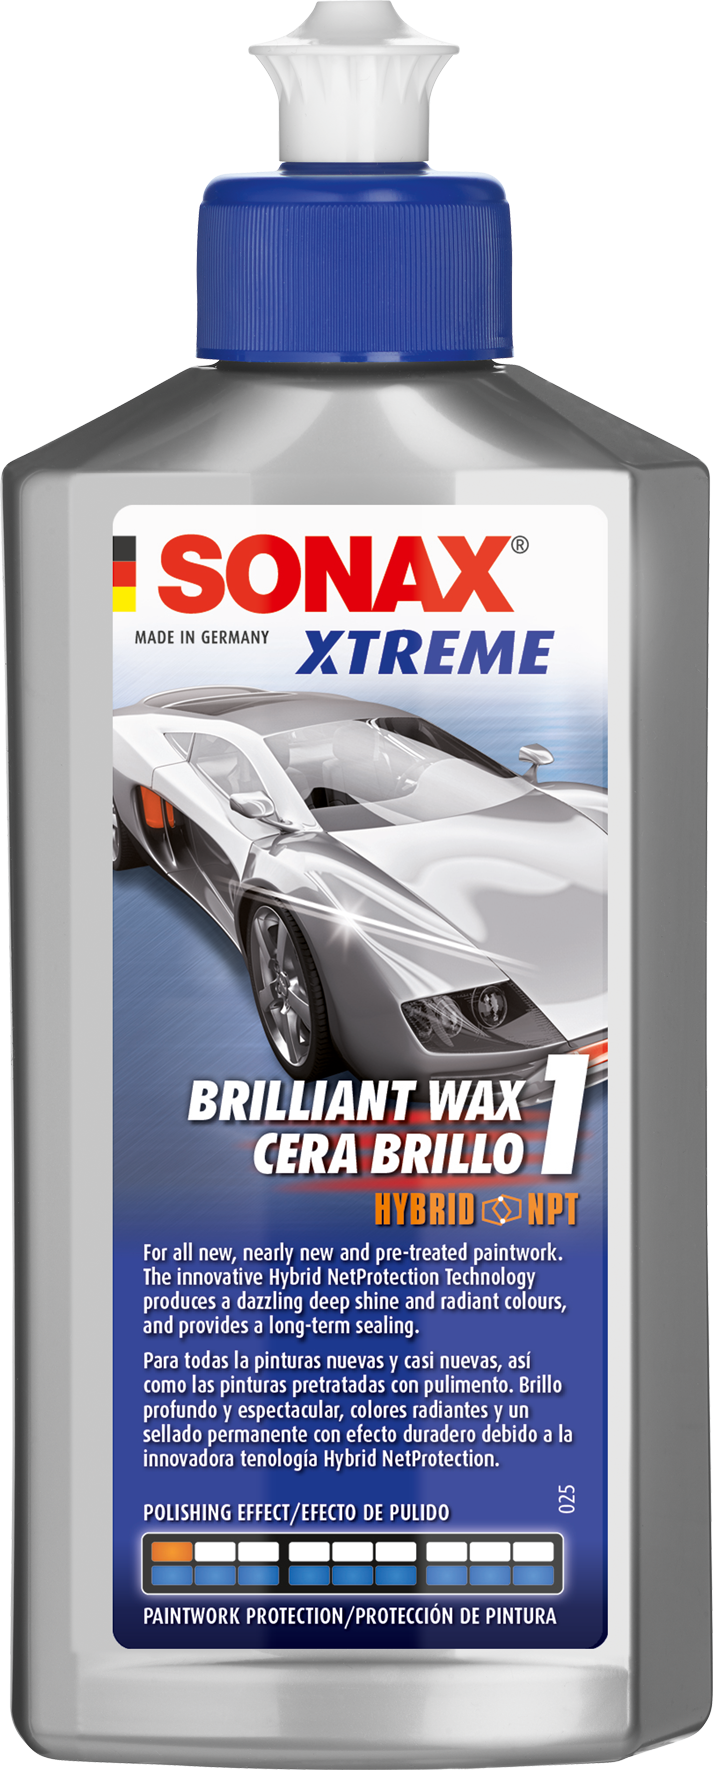 XTREME Brilliant Wax 1- EXTREME Wax Tổng Hợp Lai Bảo Vệ Sơn Sáng Chói XTREME 1